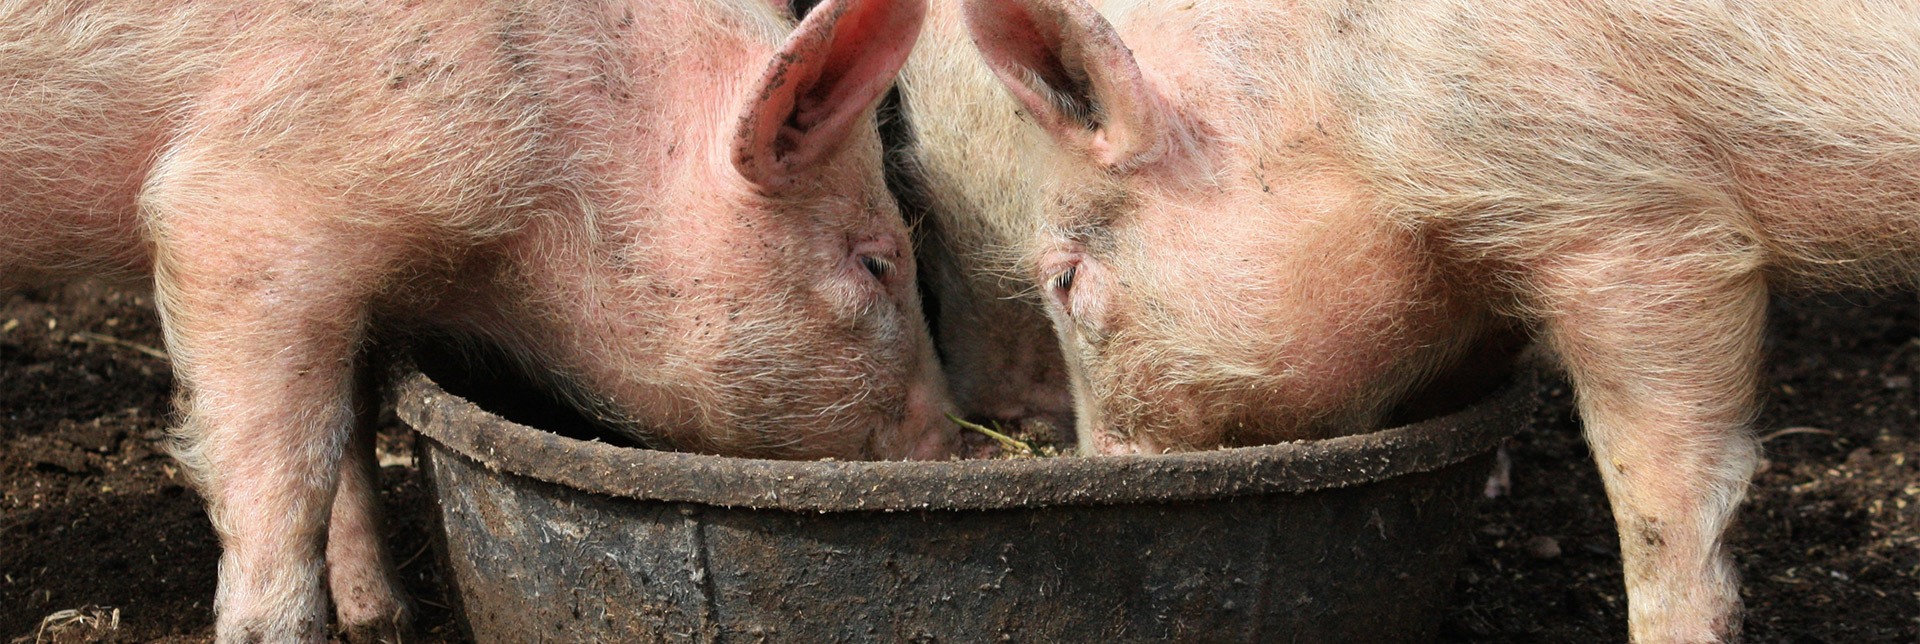 pigs-food-waste-header.jpg